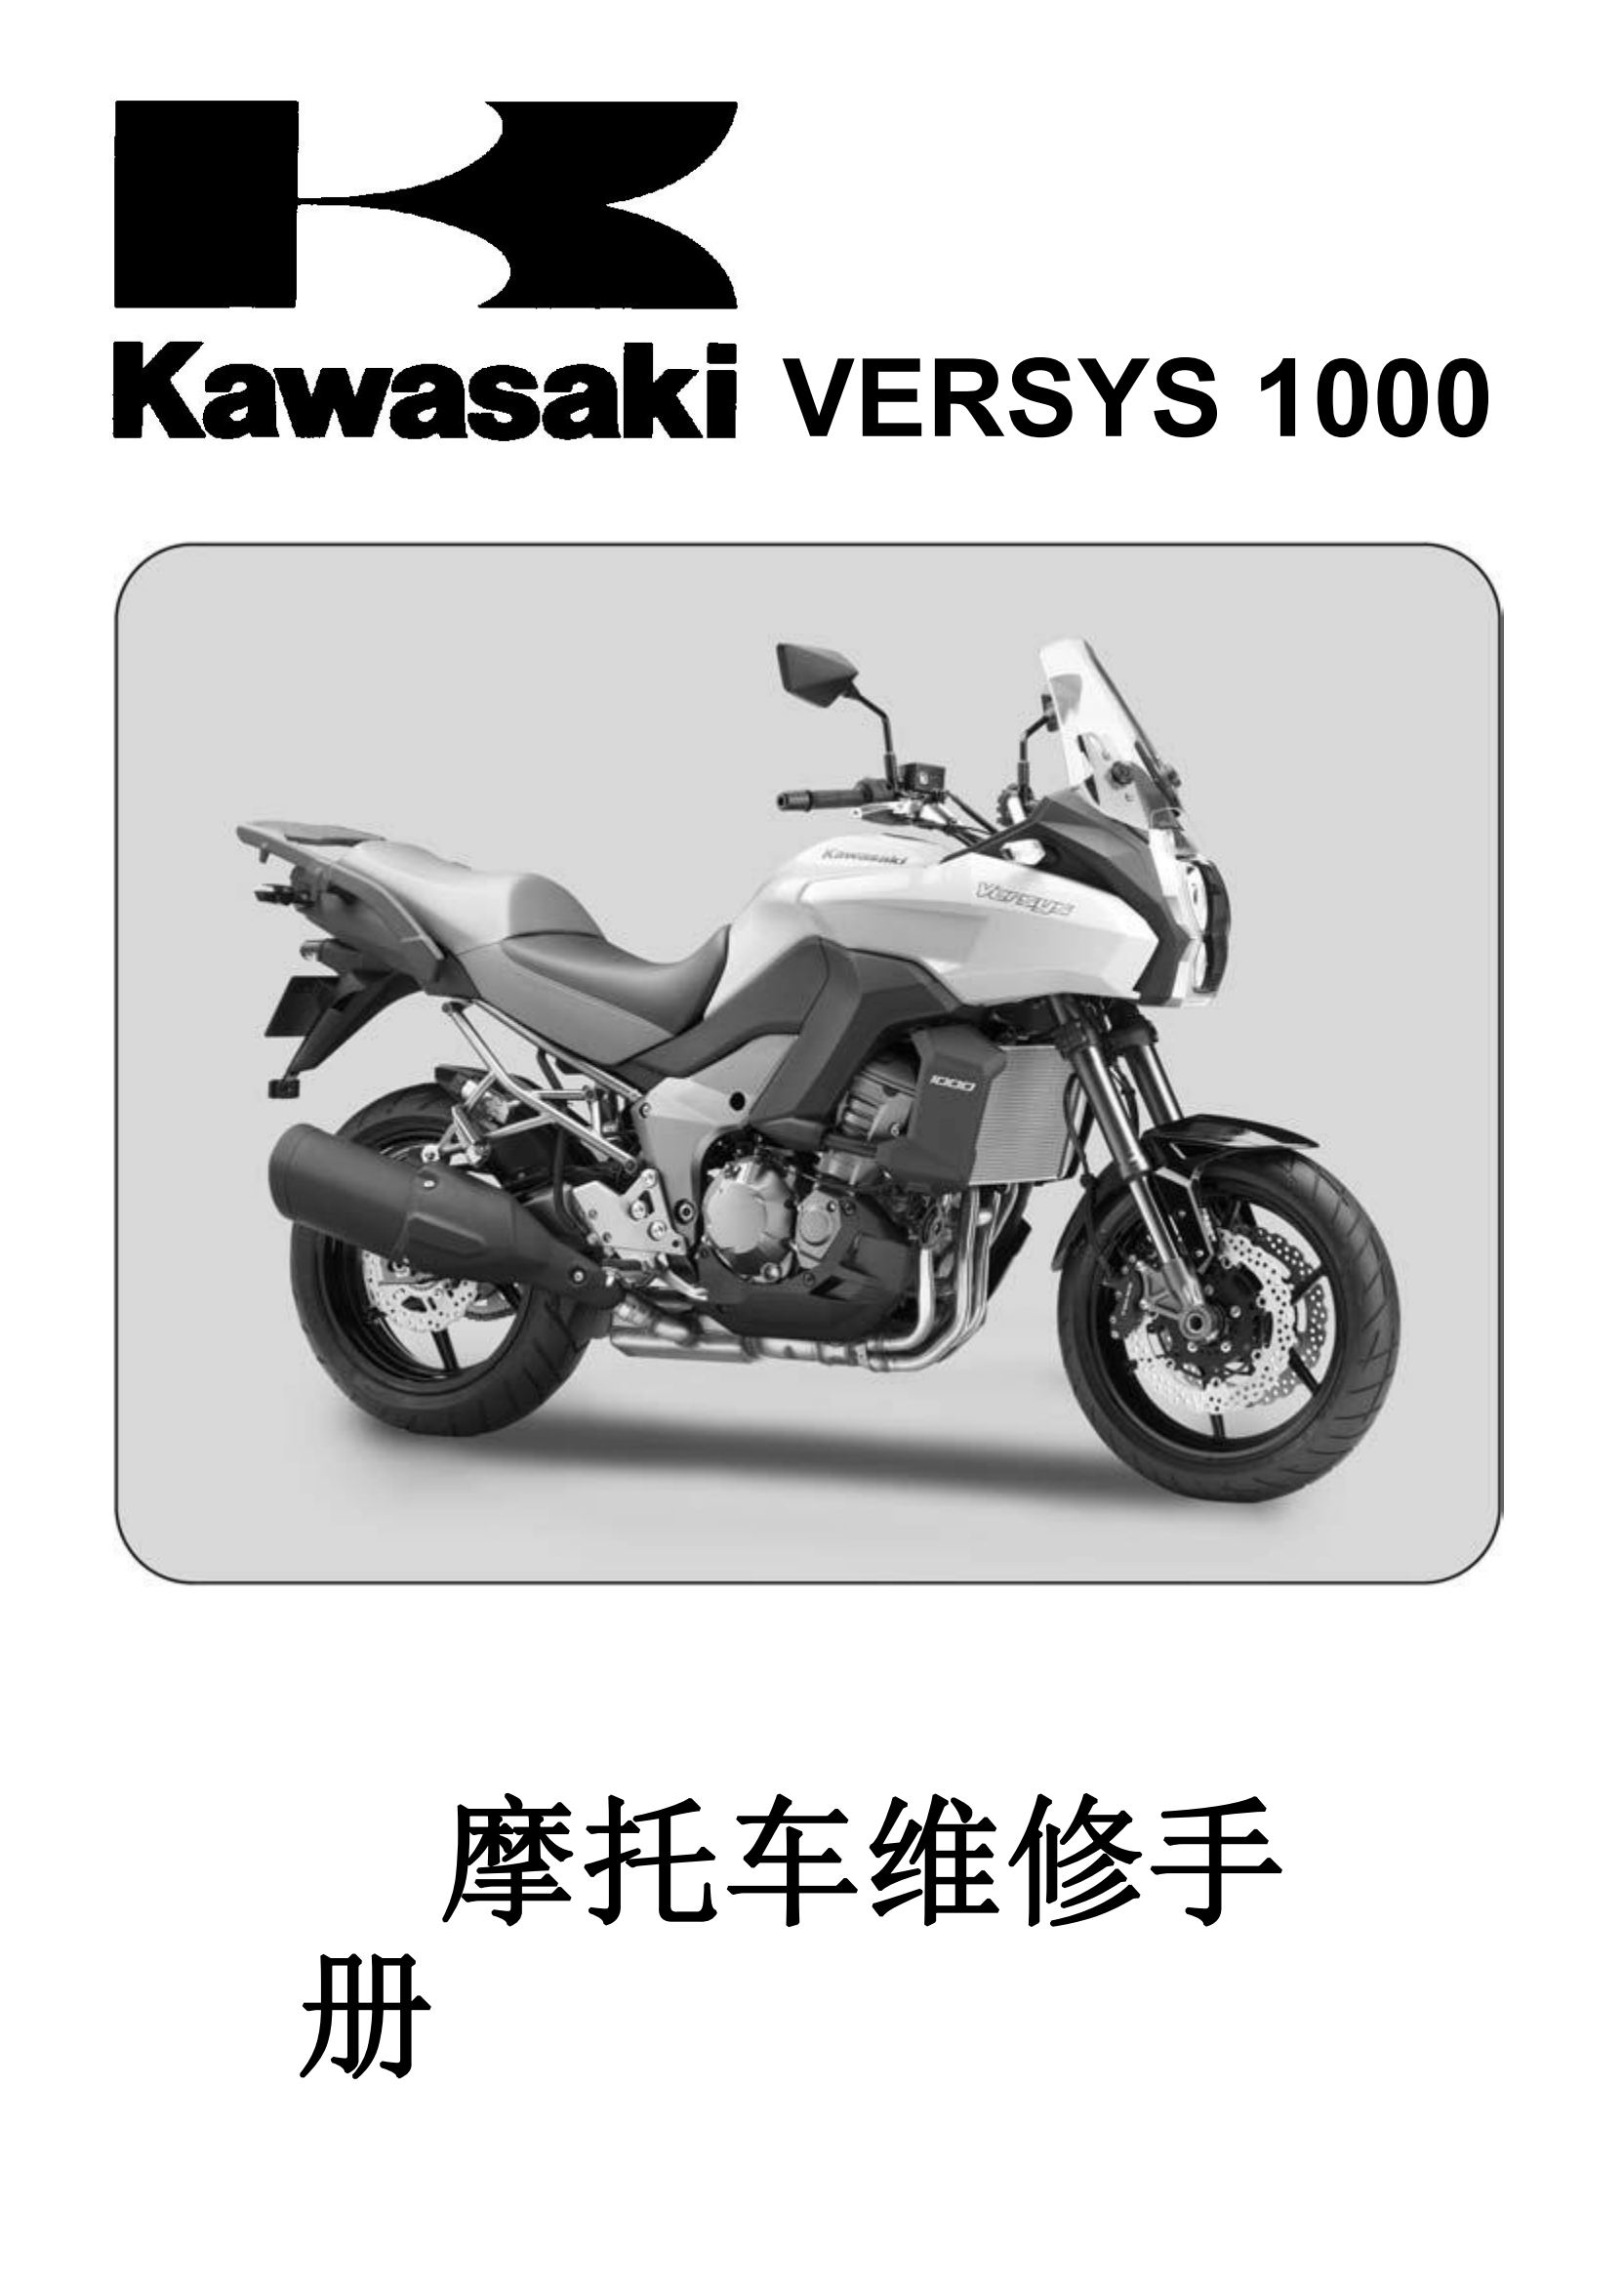 简体中文2011-2014年川崎异兽1000 Kawasaki Versys 1000 维修手册插图